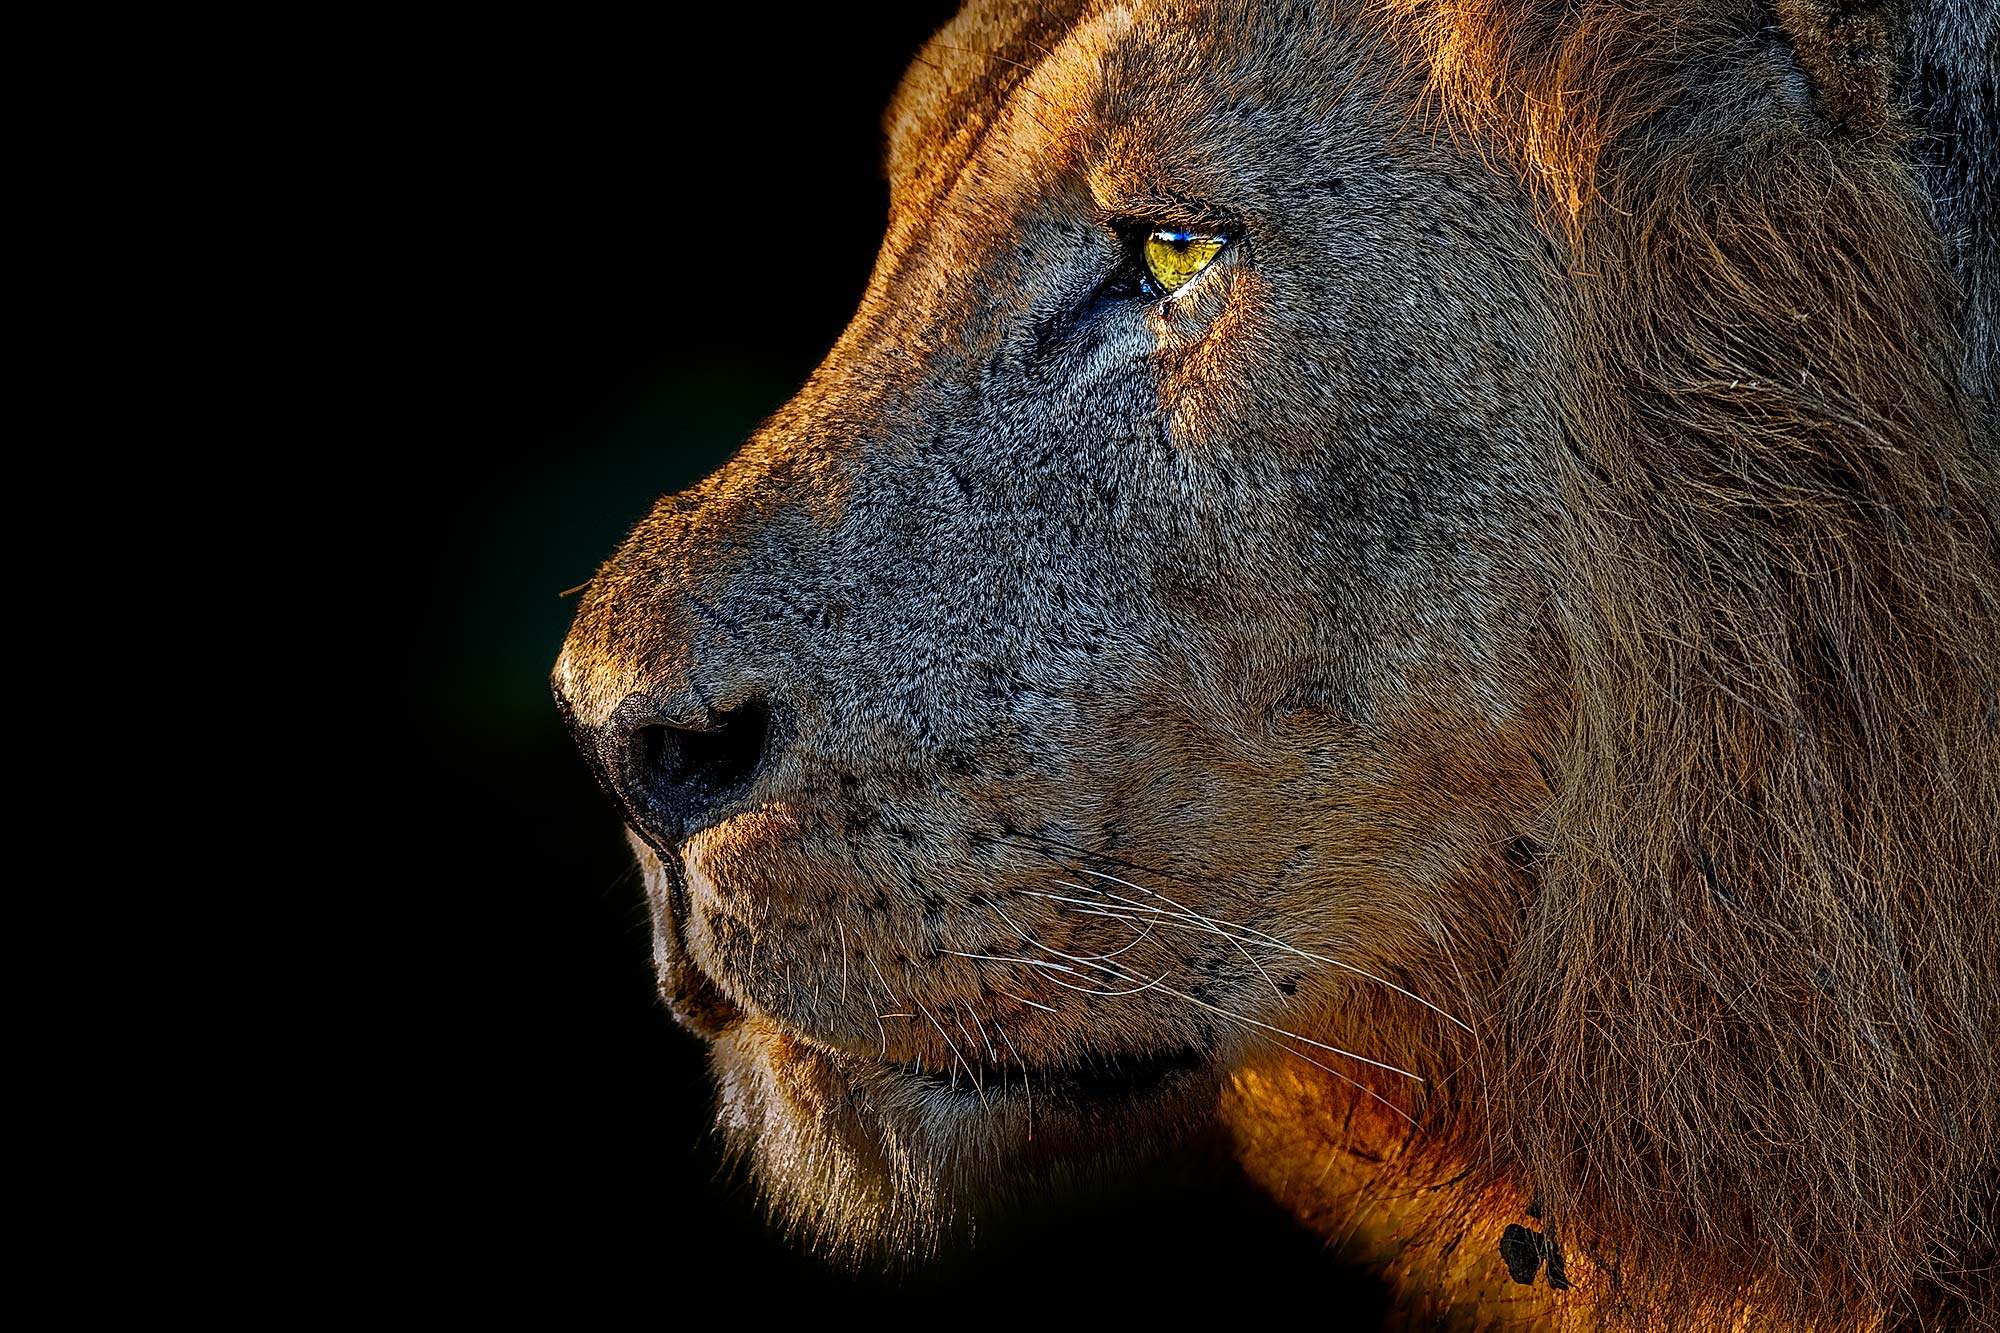 Löwe fotografiert von Benny Rebel auf einer Fotoreise durch Sambia.